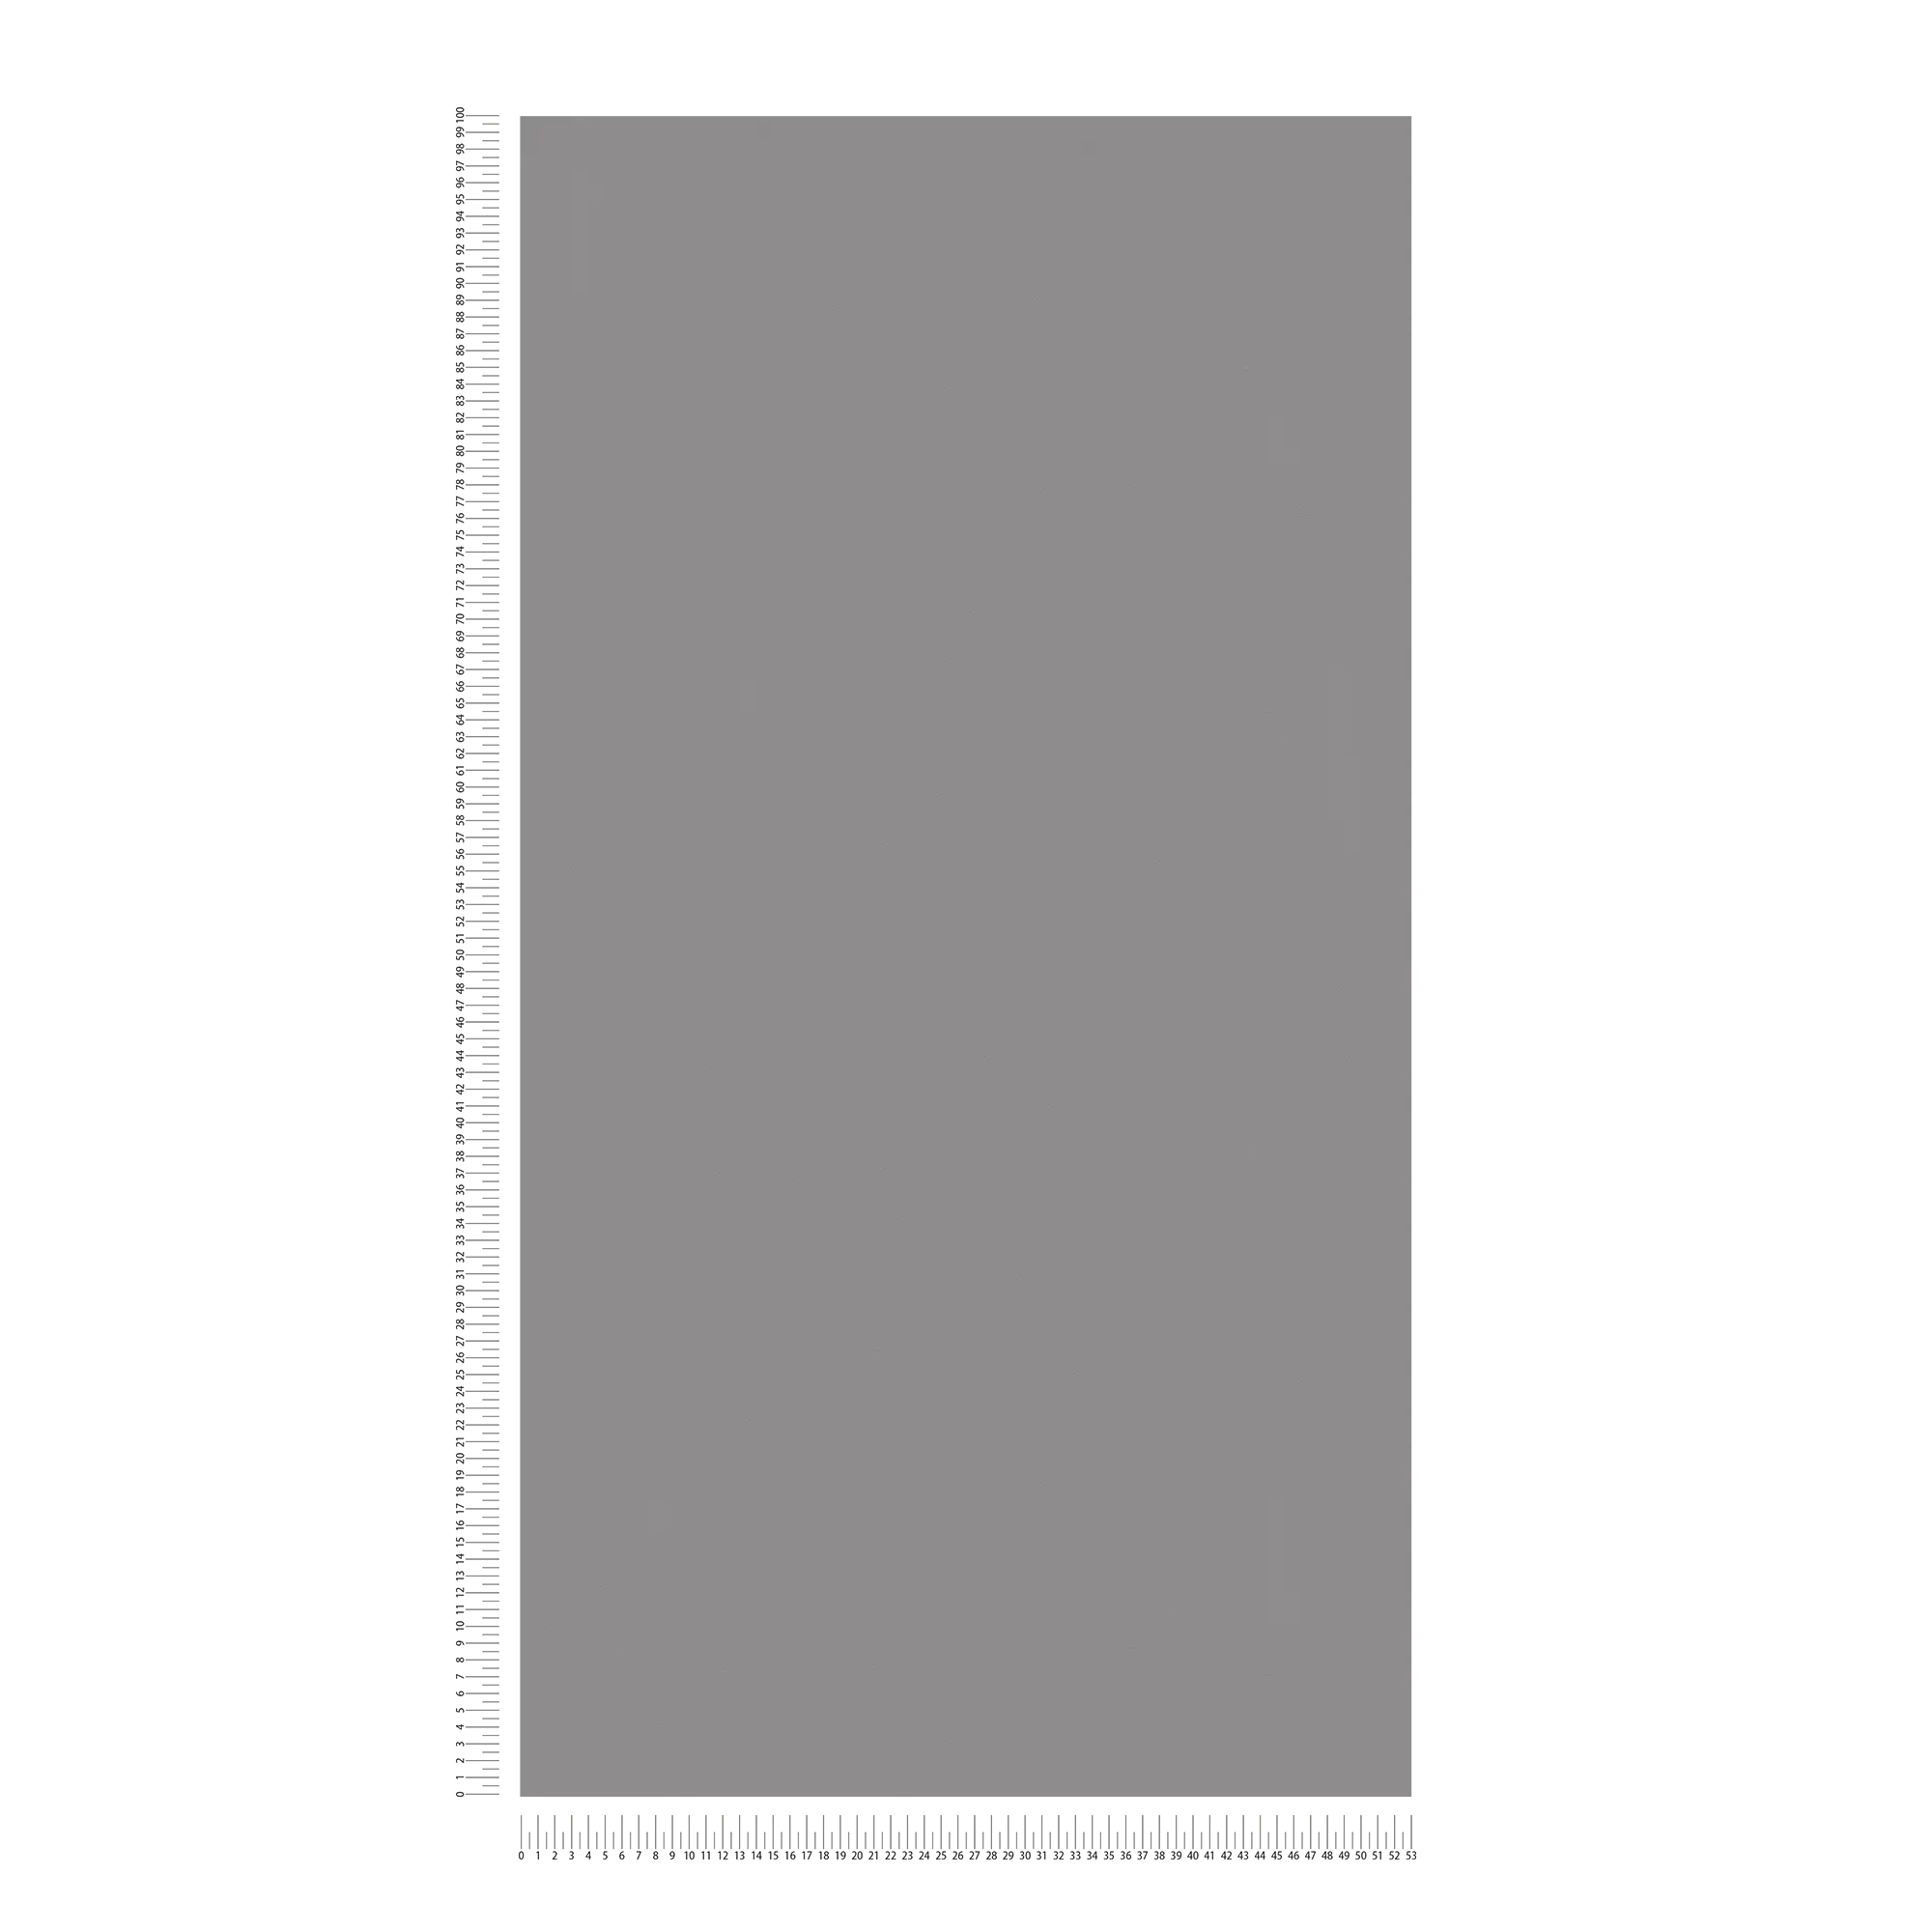             Vliesbehang grijs effen met vlakke structuur & mat oppervlak
        